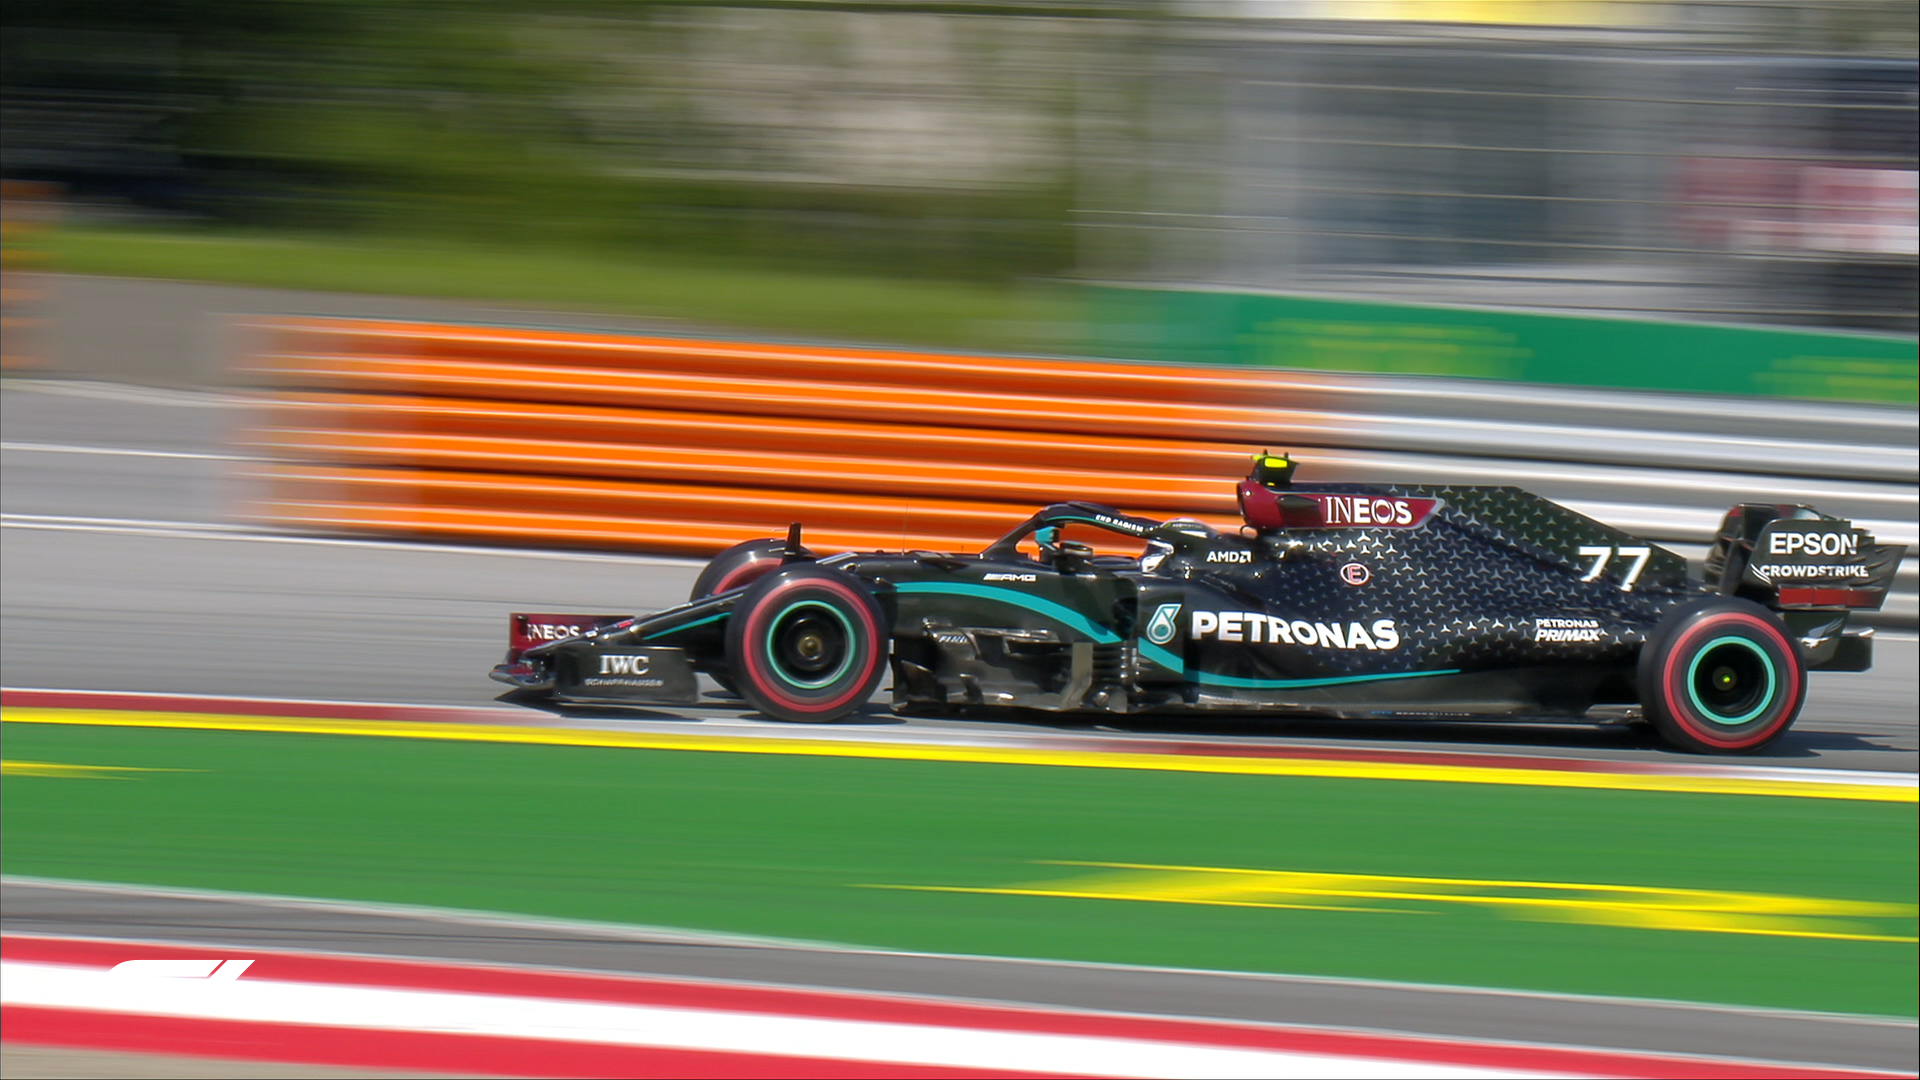 Valtteri Bottas, colegul lui Hamilton de la Mercedes, pleacă din pole-position! Marele Premiu al Austriei, prima cursă a sezonului 2020 în Formula 1, va fi duminică de la ora 16.00